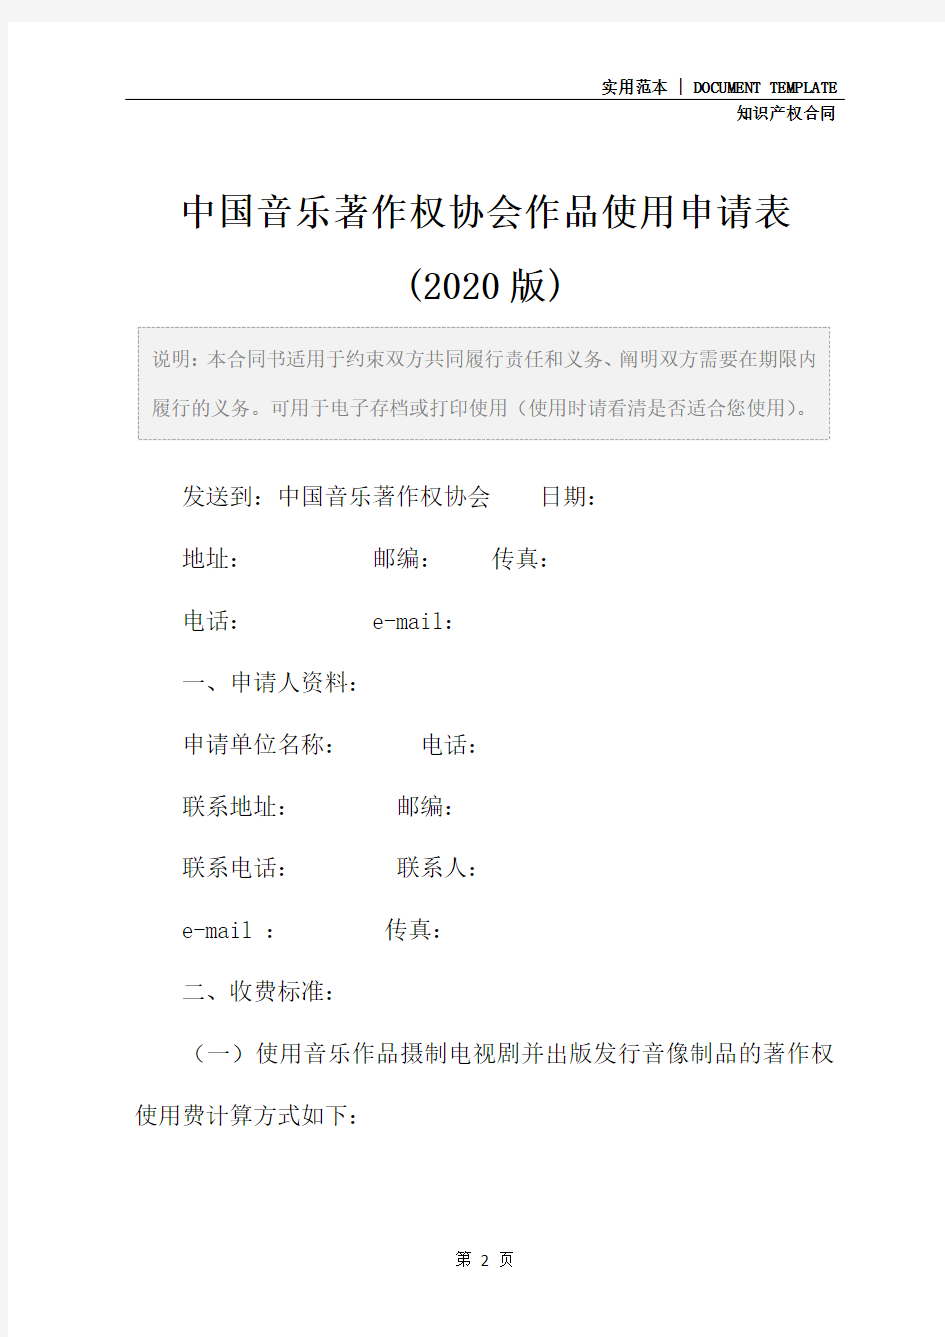 中国音乐著作权协会作品使用申请表(2020版)